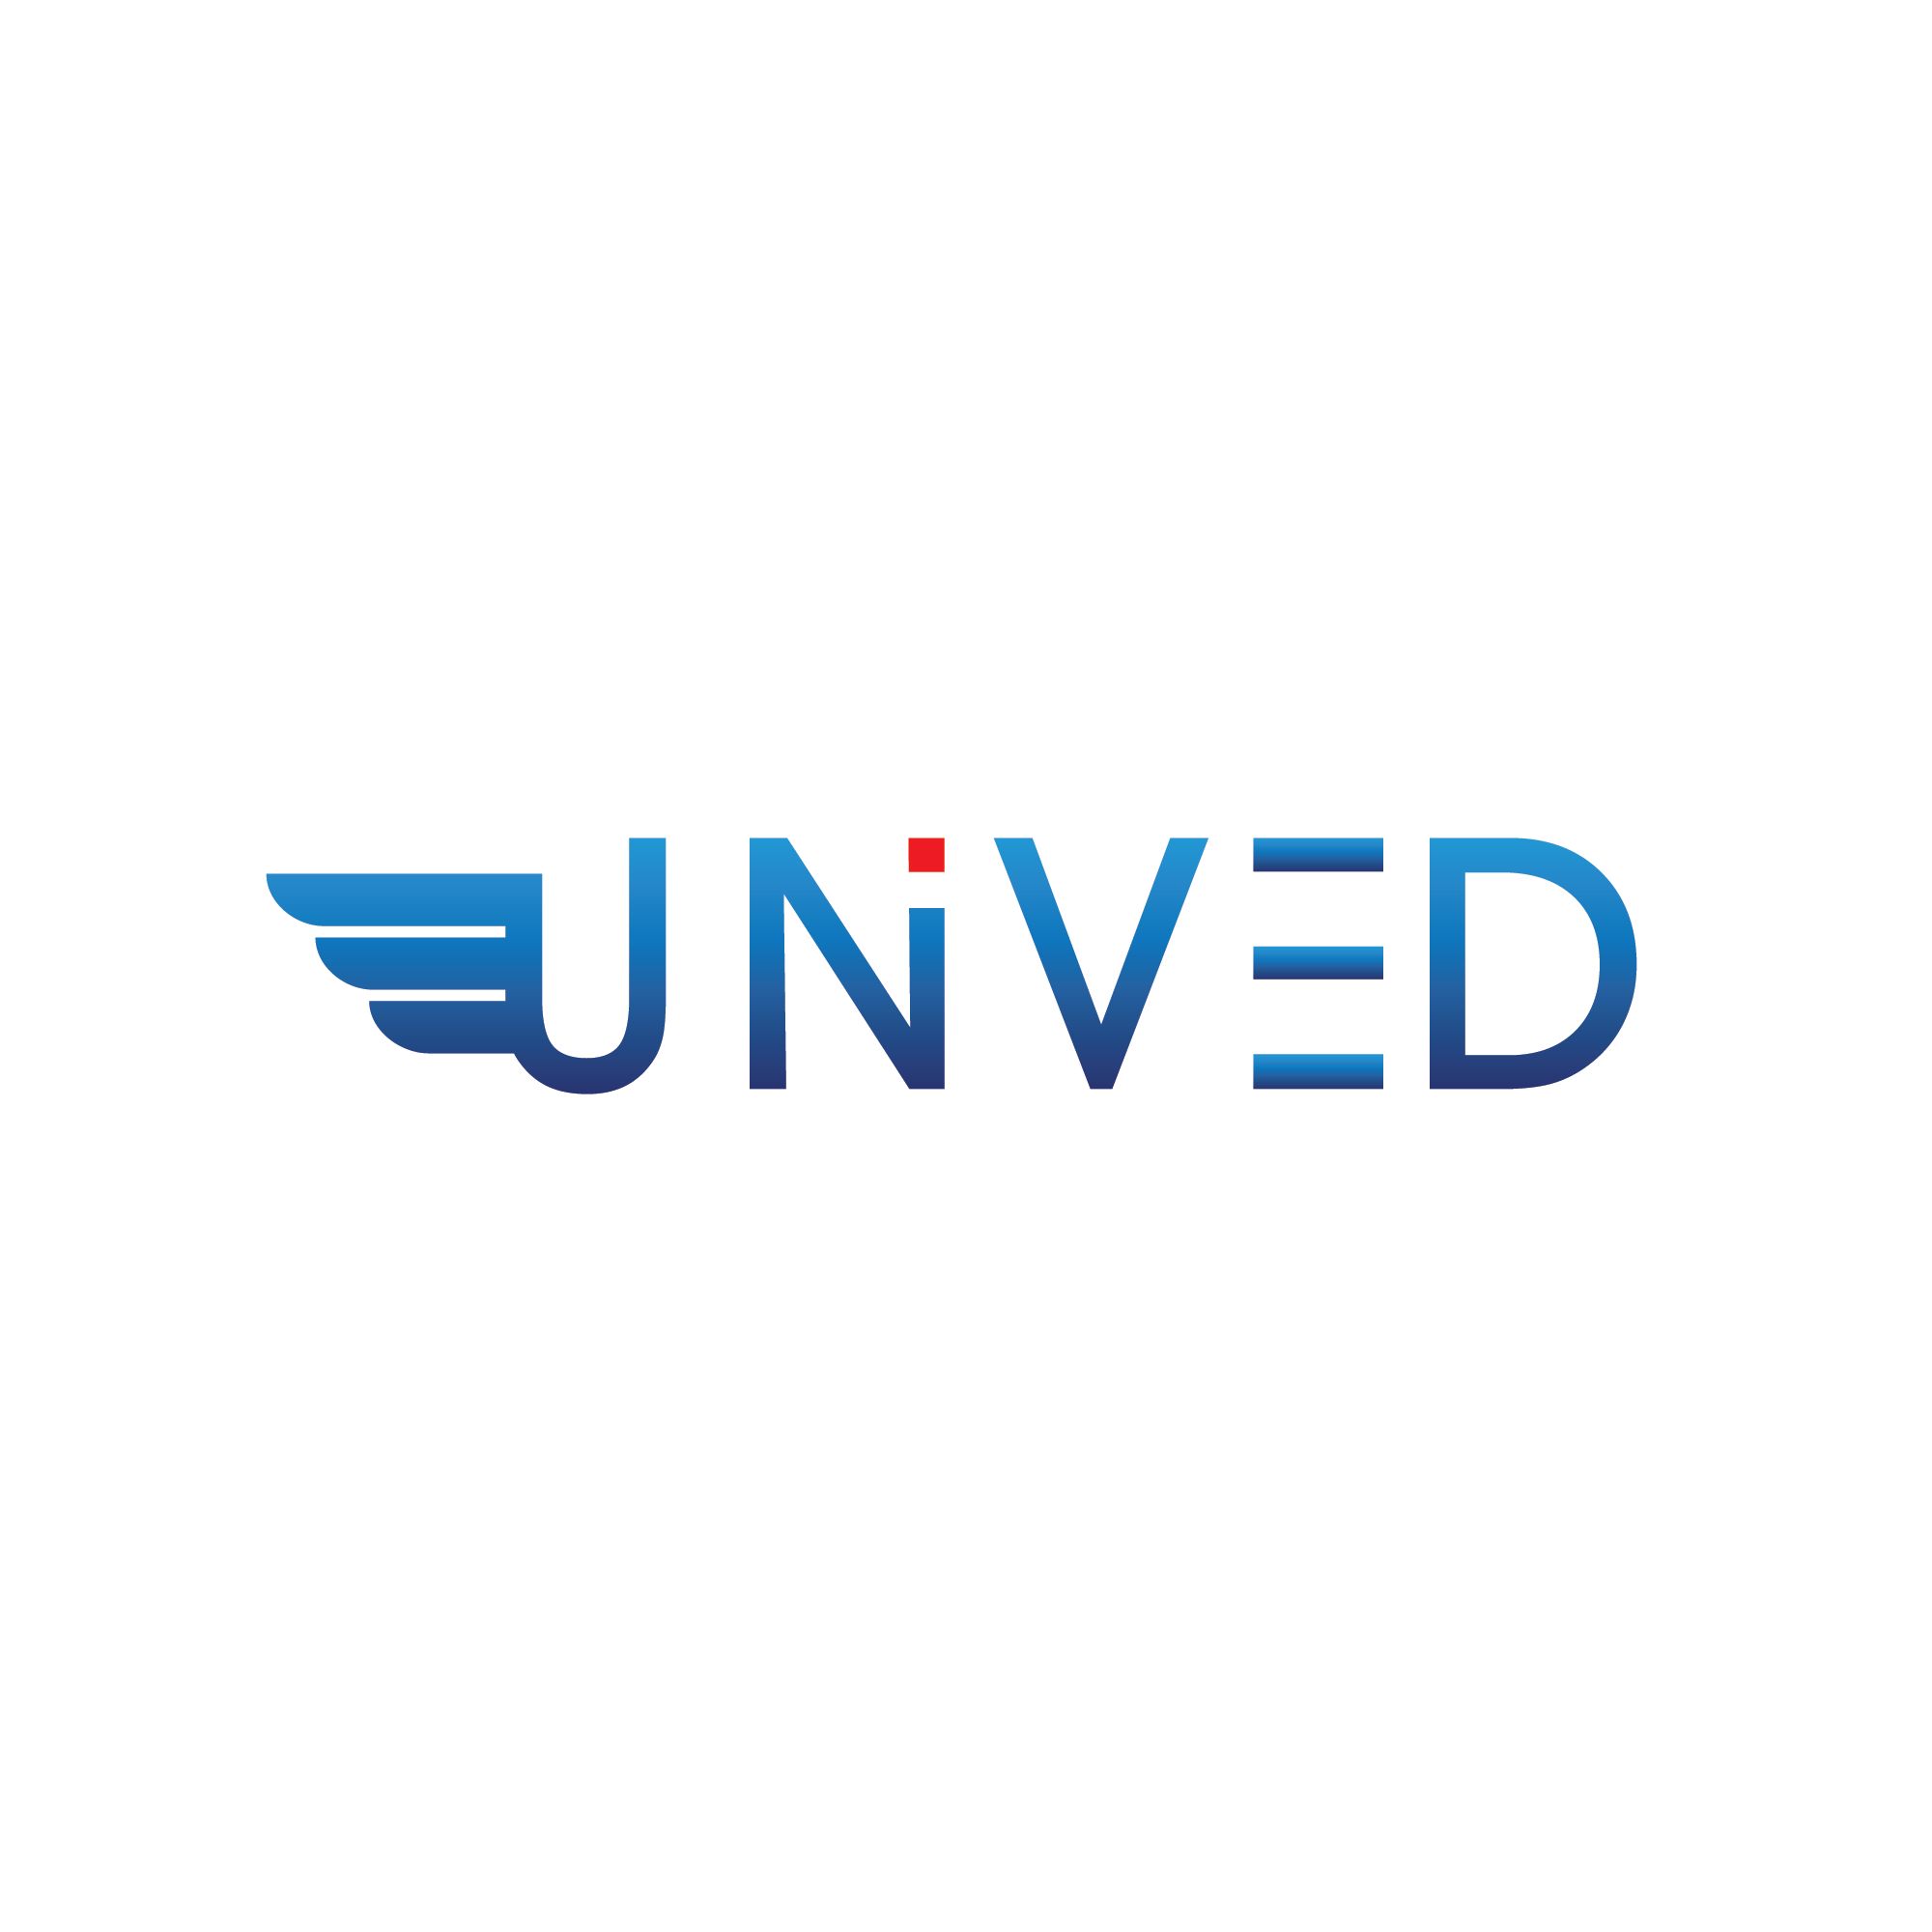 Логотип для логистической компании Unived - дизайнер Kasatkindesign